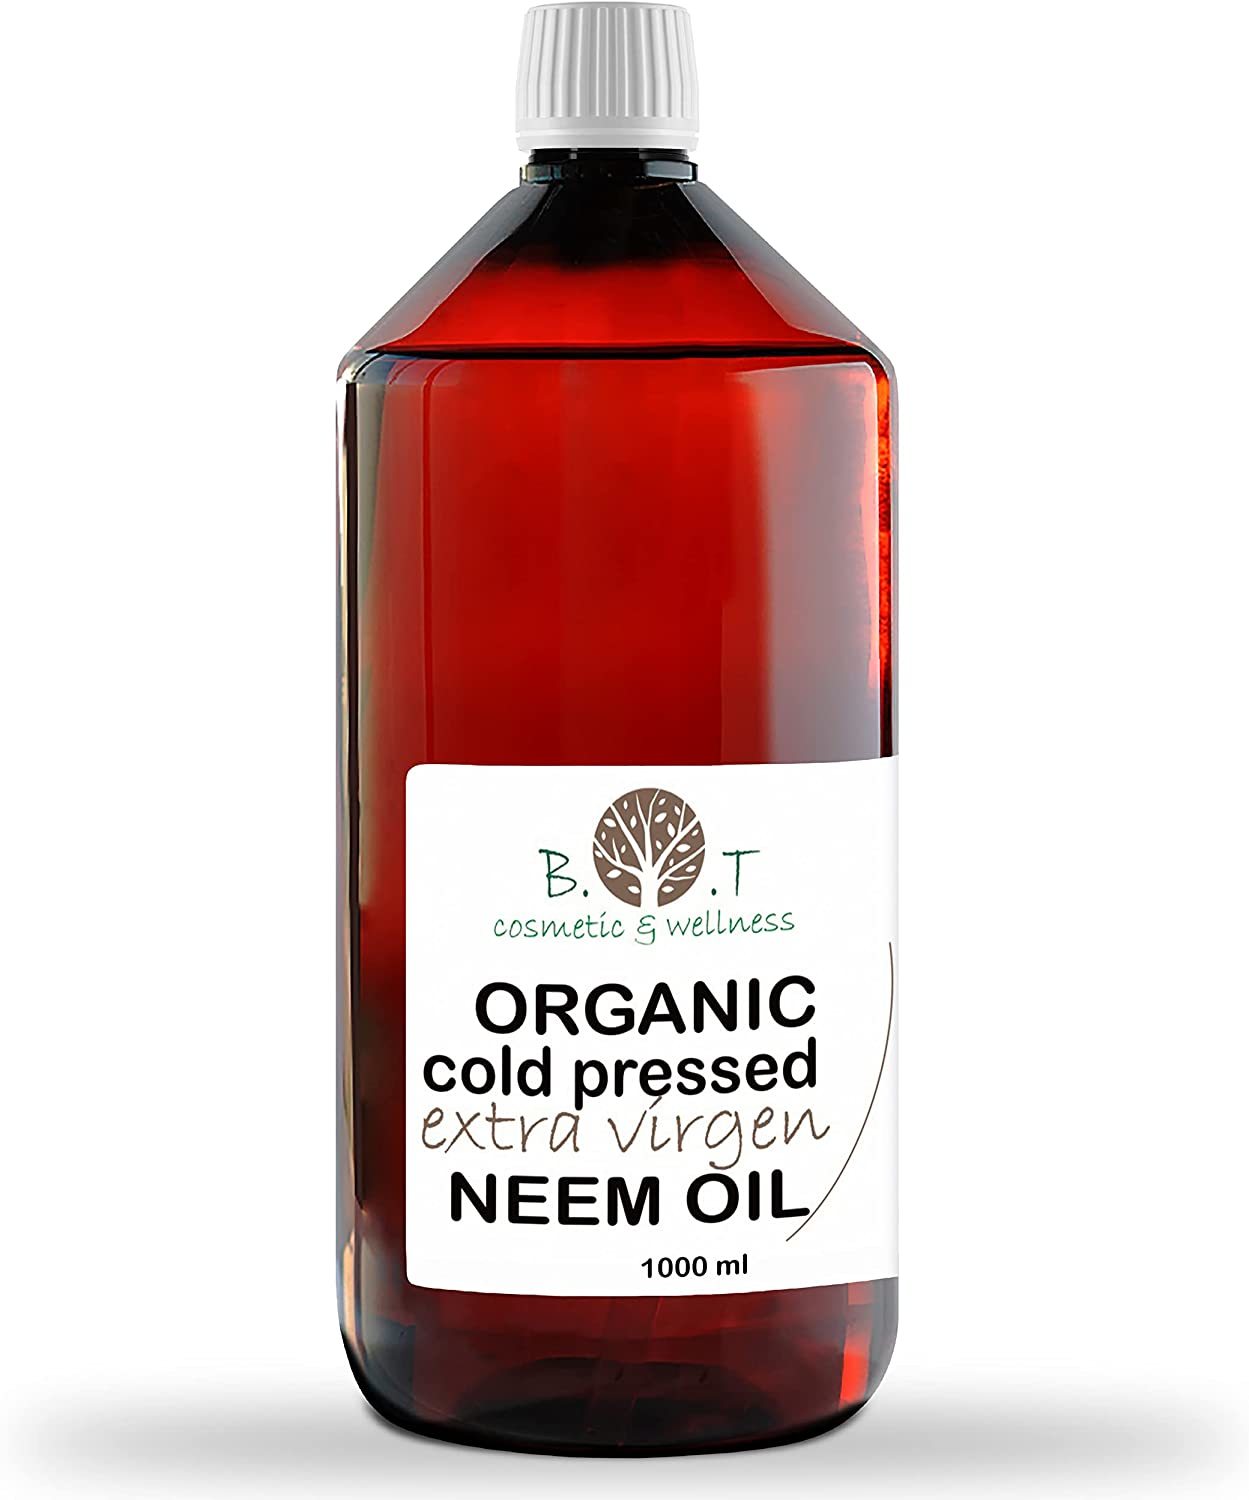 Aceite de Neem, insecticida para plantas que se puede comprar en Amazon